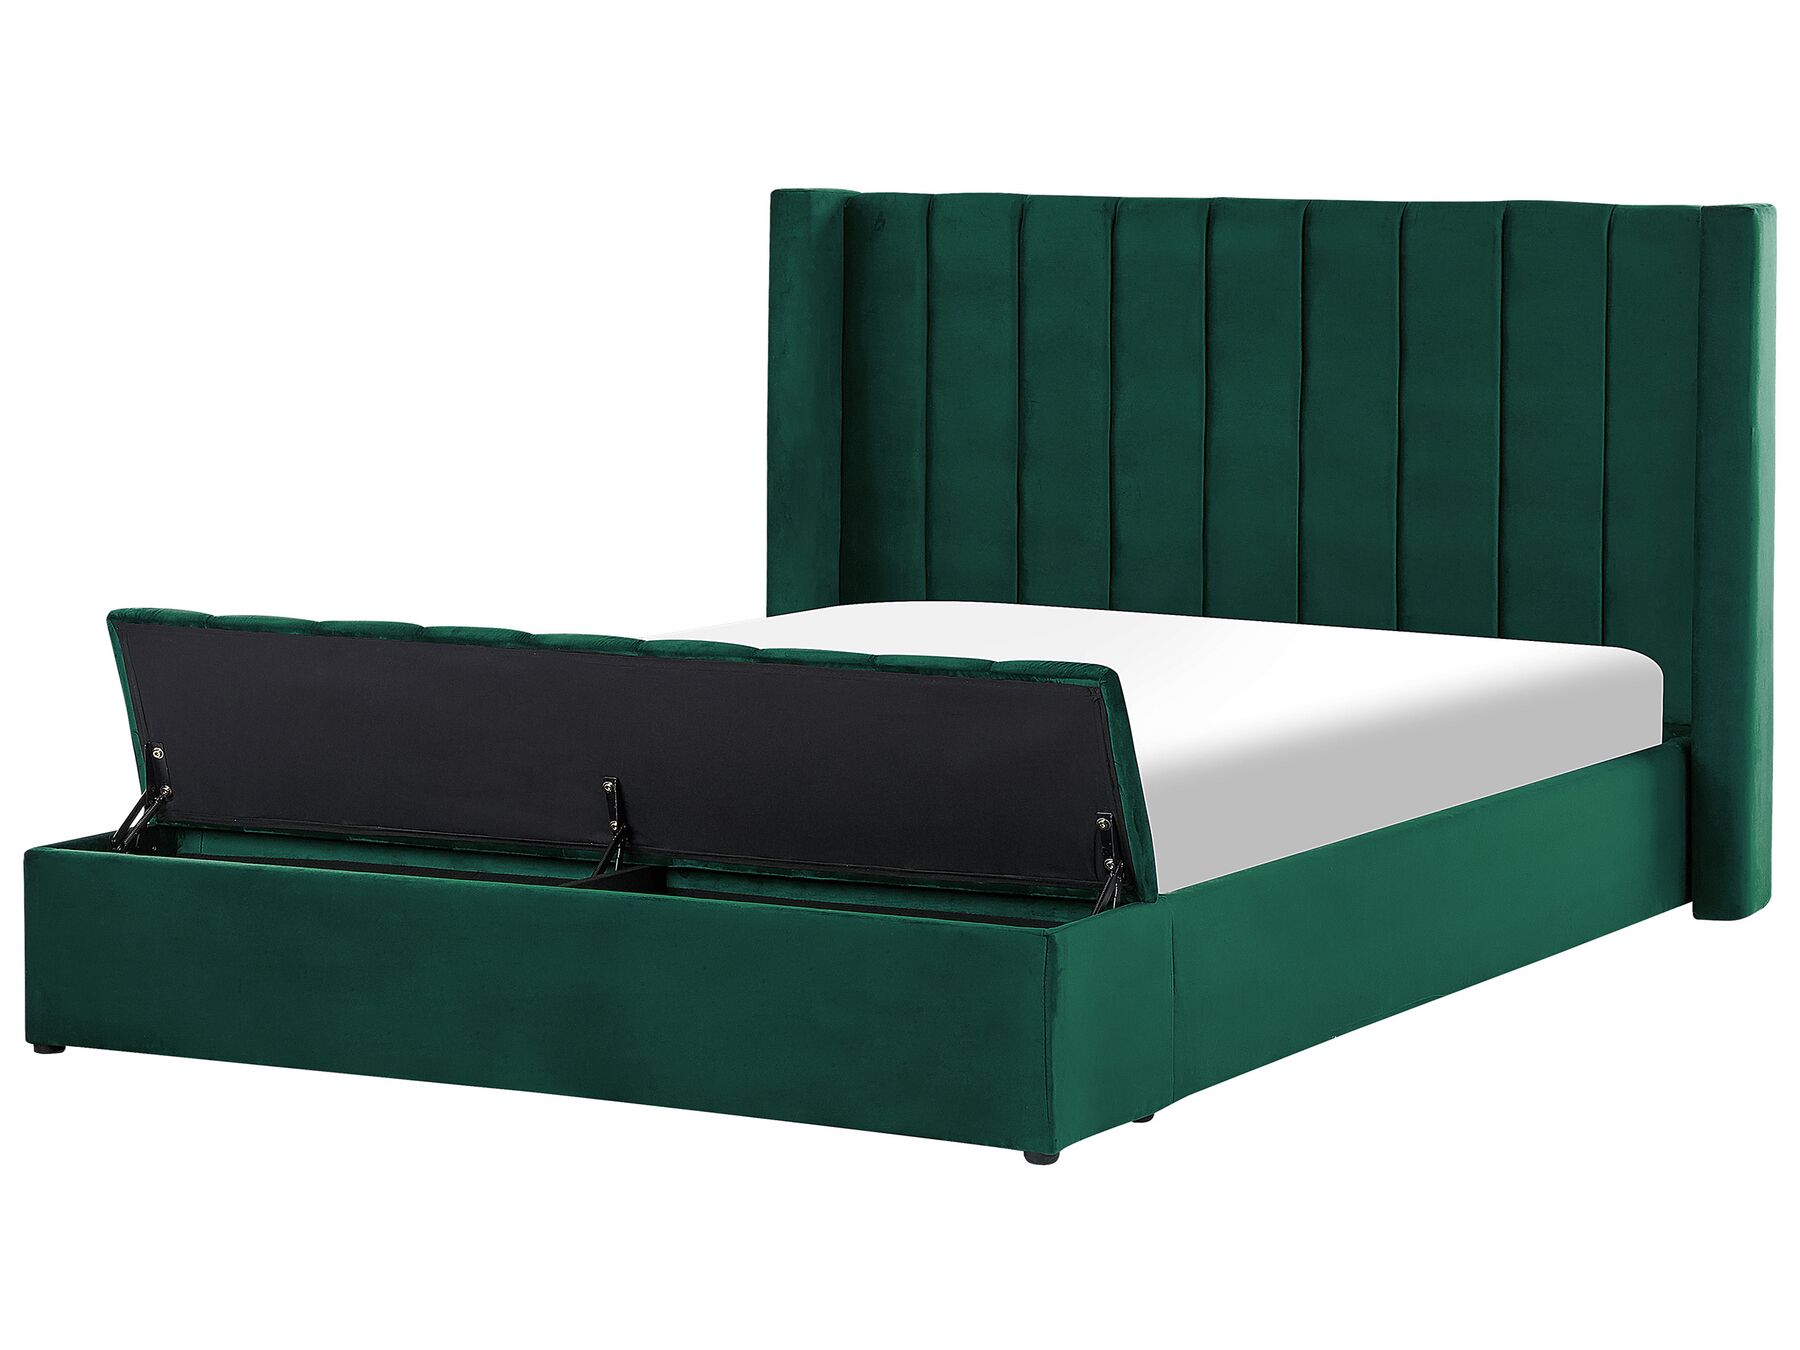 Sametová vodní postel s úložným prostorem 180 x 200 cm zelená NOYERS_914945